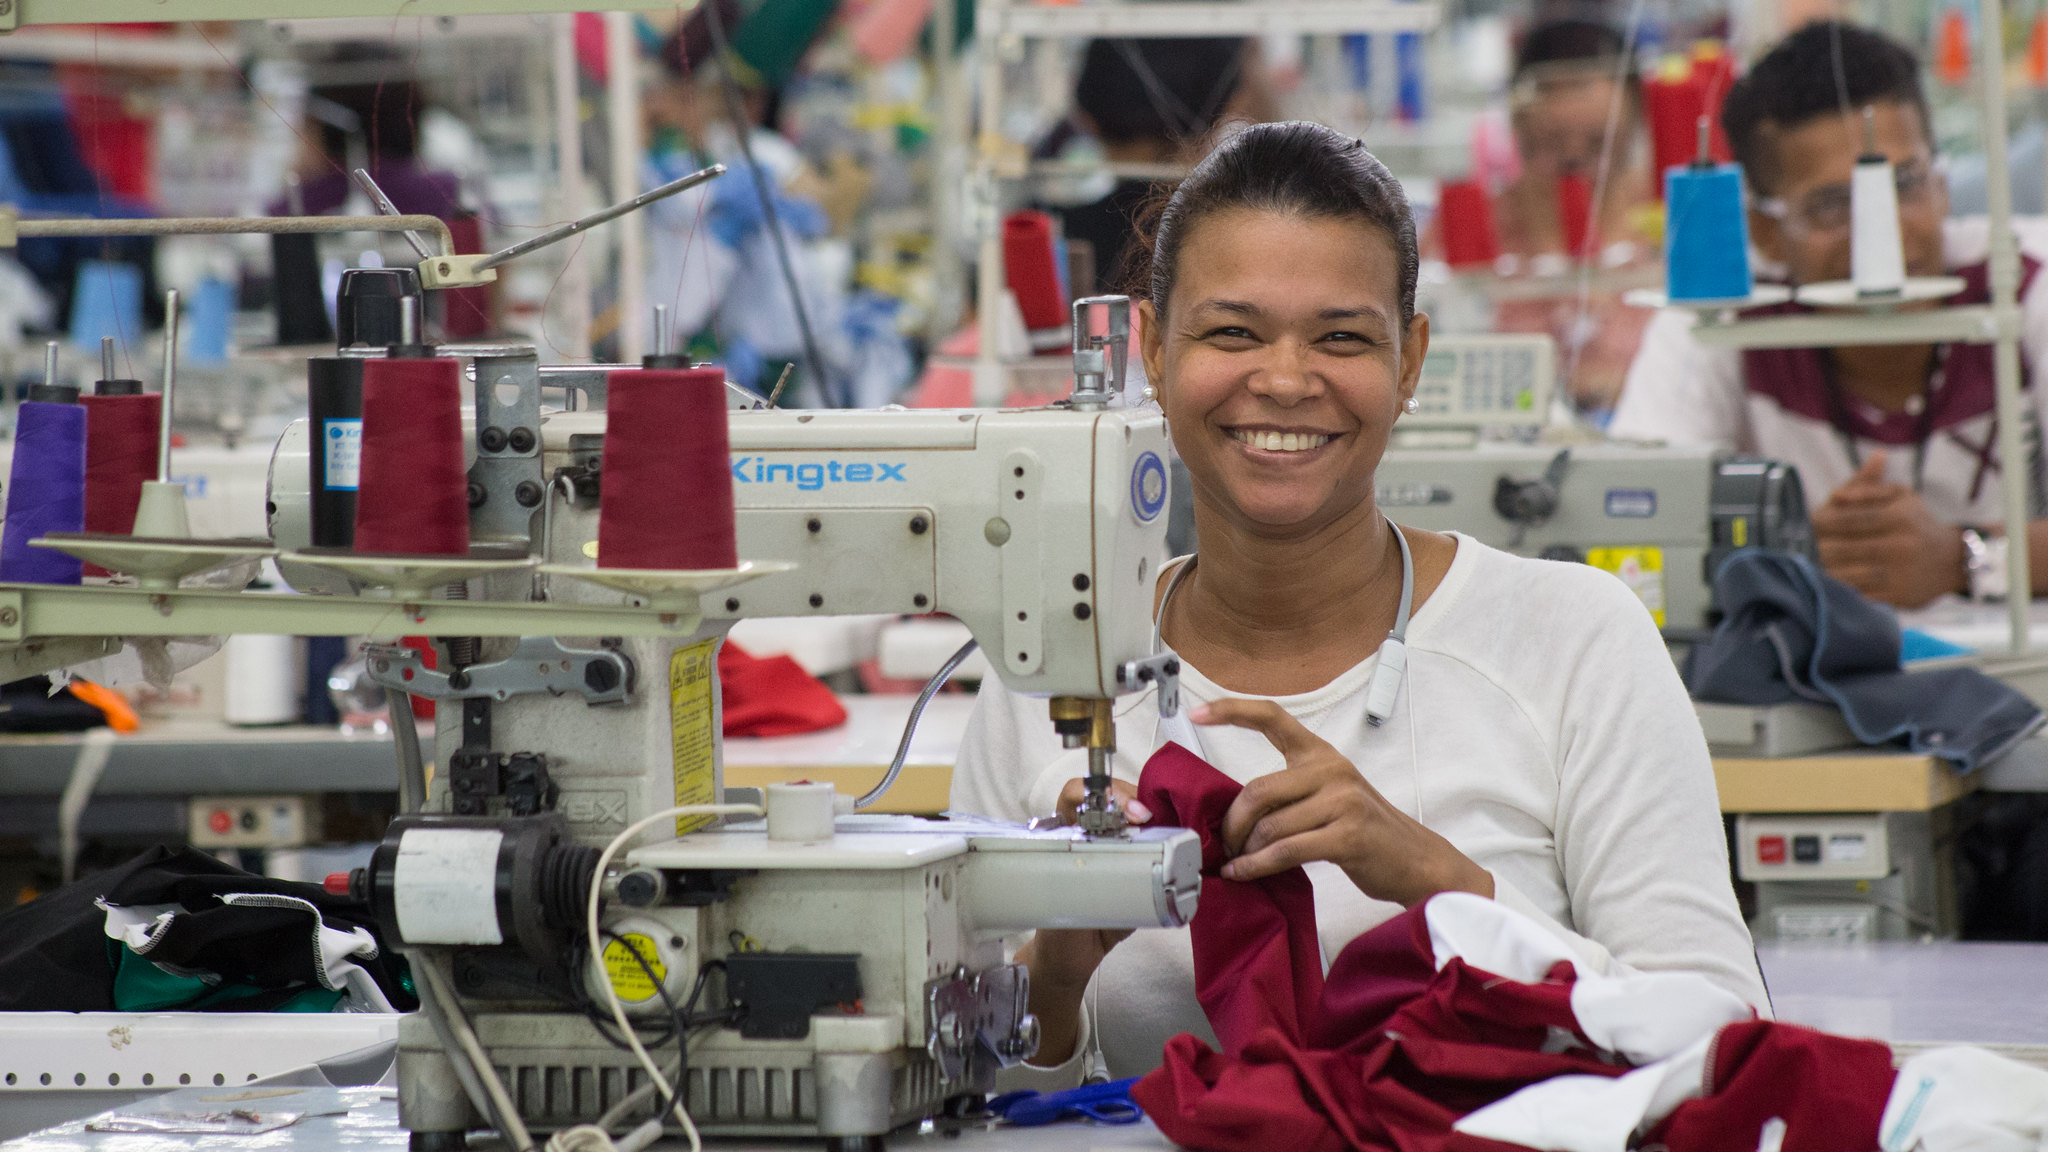 REPÚBLICA DOMINICANA: Exportaciones textiles hacia Estados Unidos crecen en un 9.19% durante período enero-abril 2019. Superan los US0.4 millones